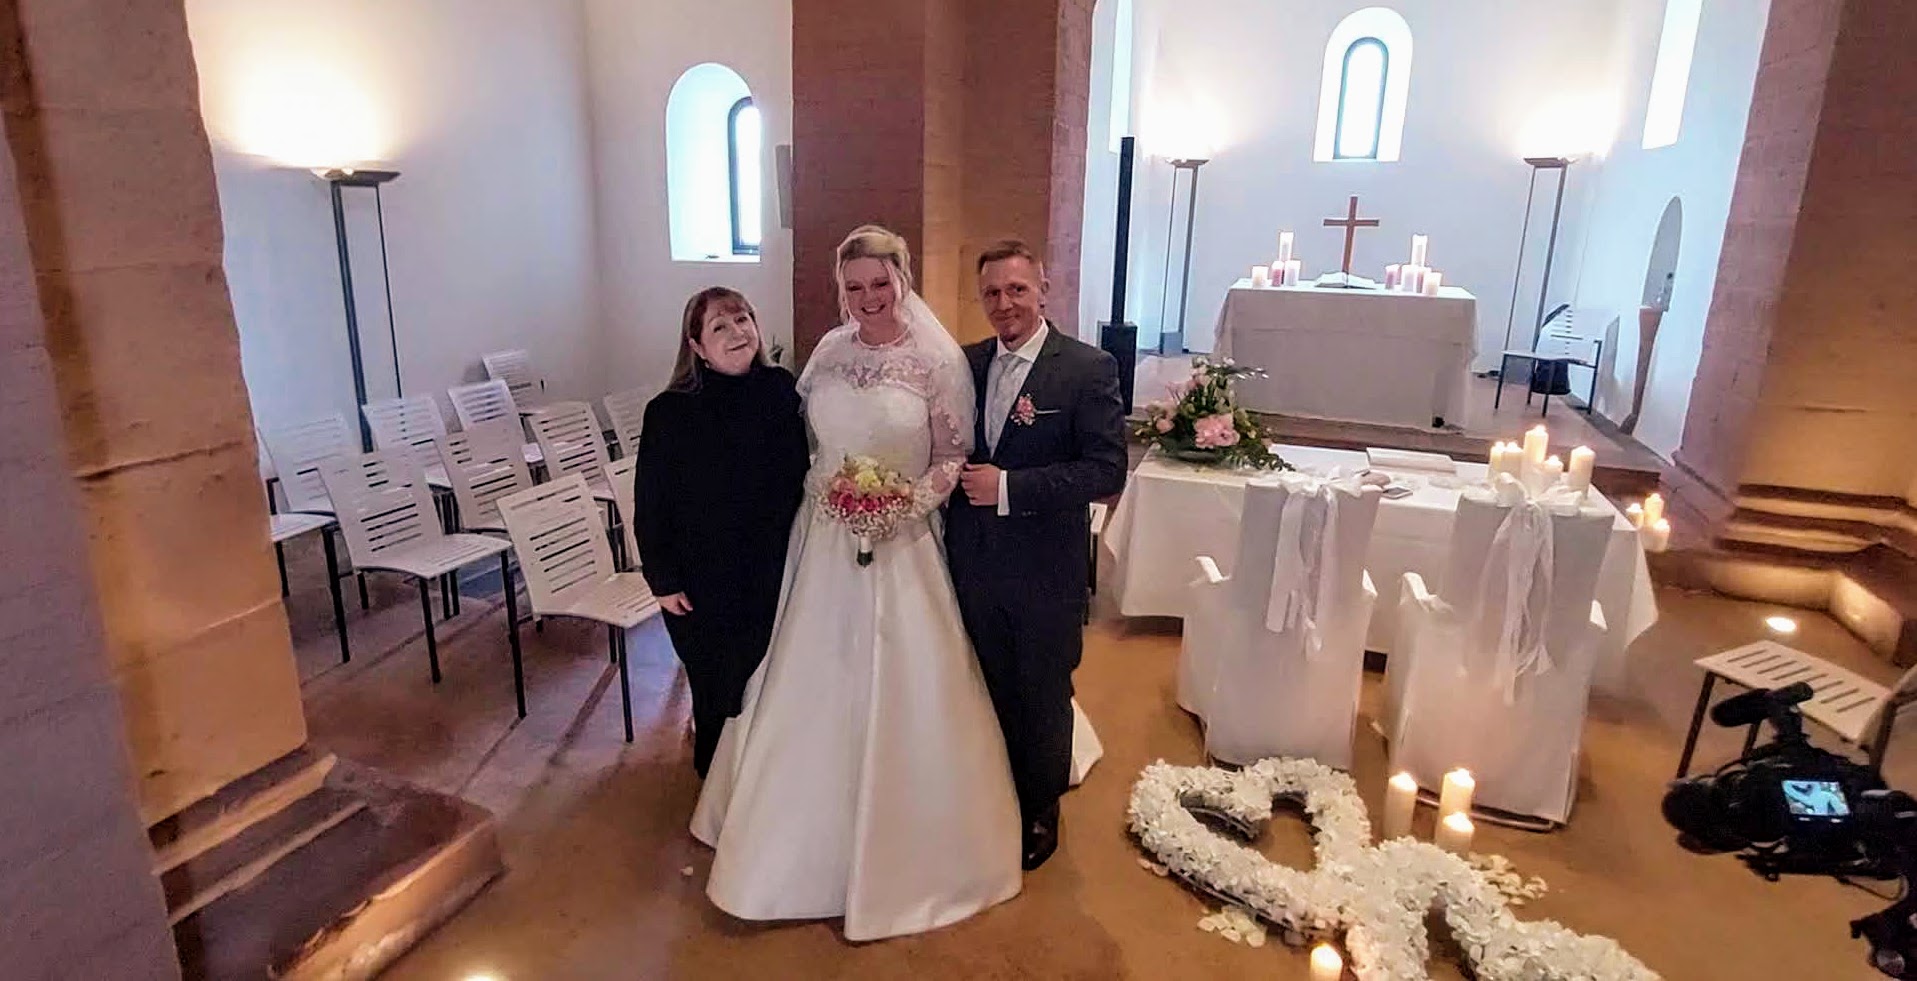 Sängerin Kathleen mit Brautpaar vor dem Altar im St. Fabianstift des Kloster Hornabch